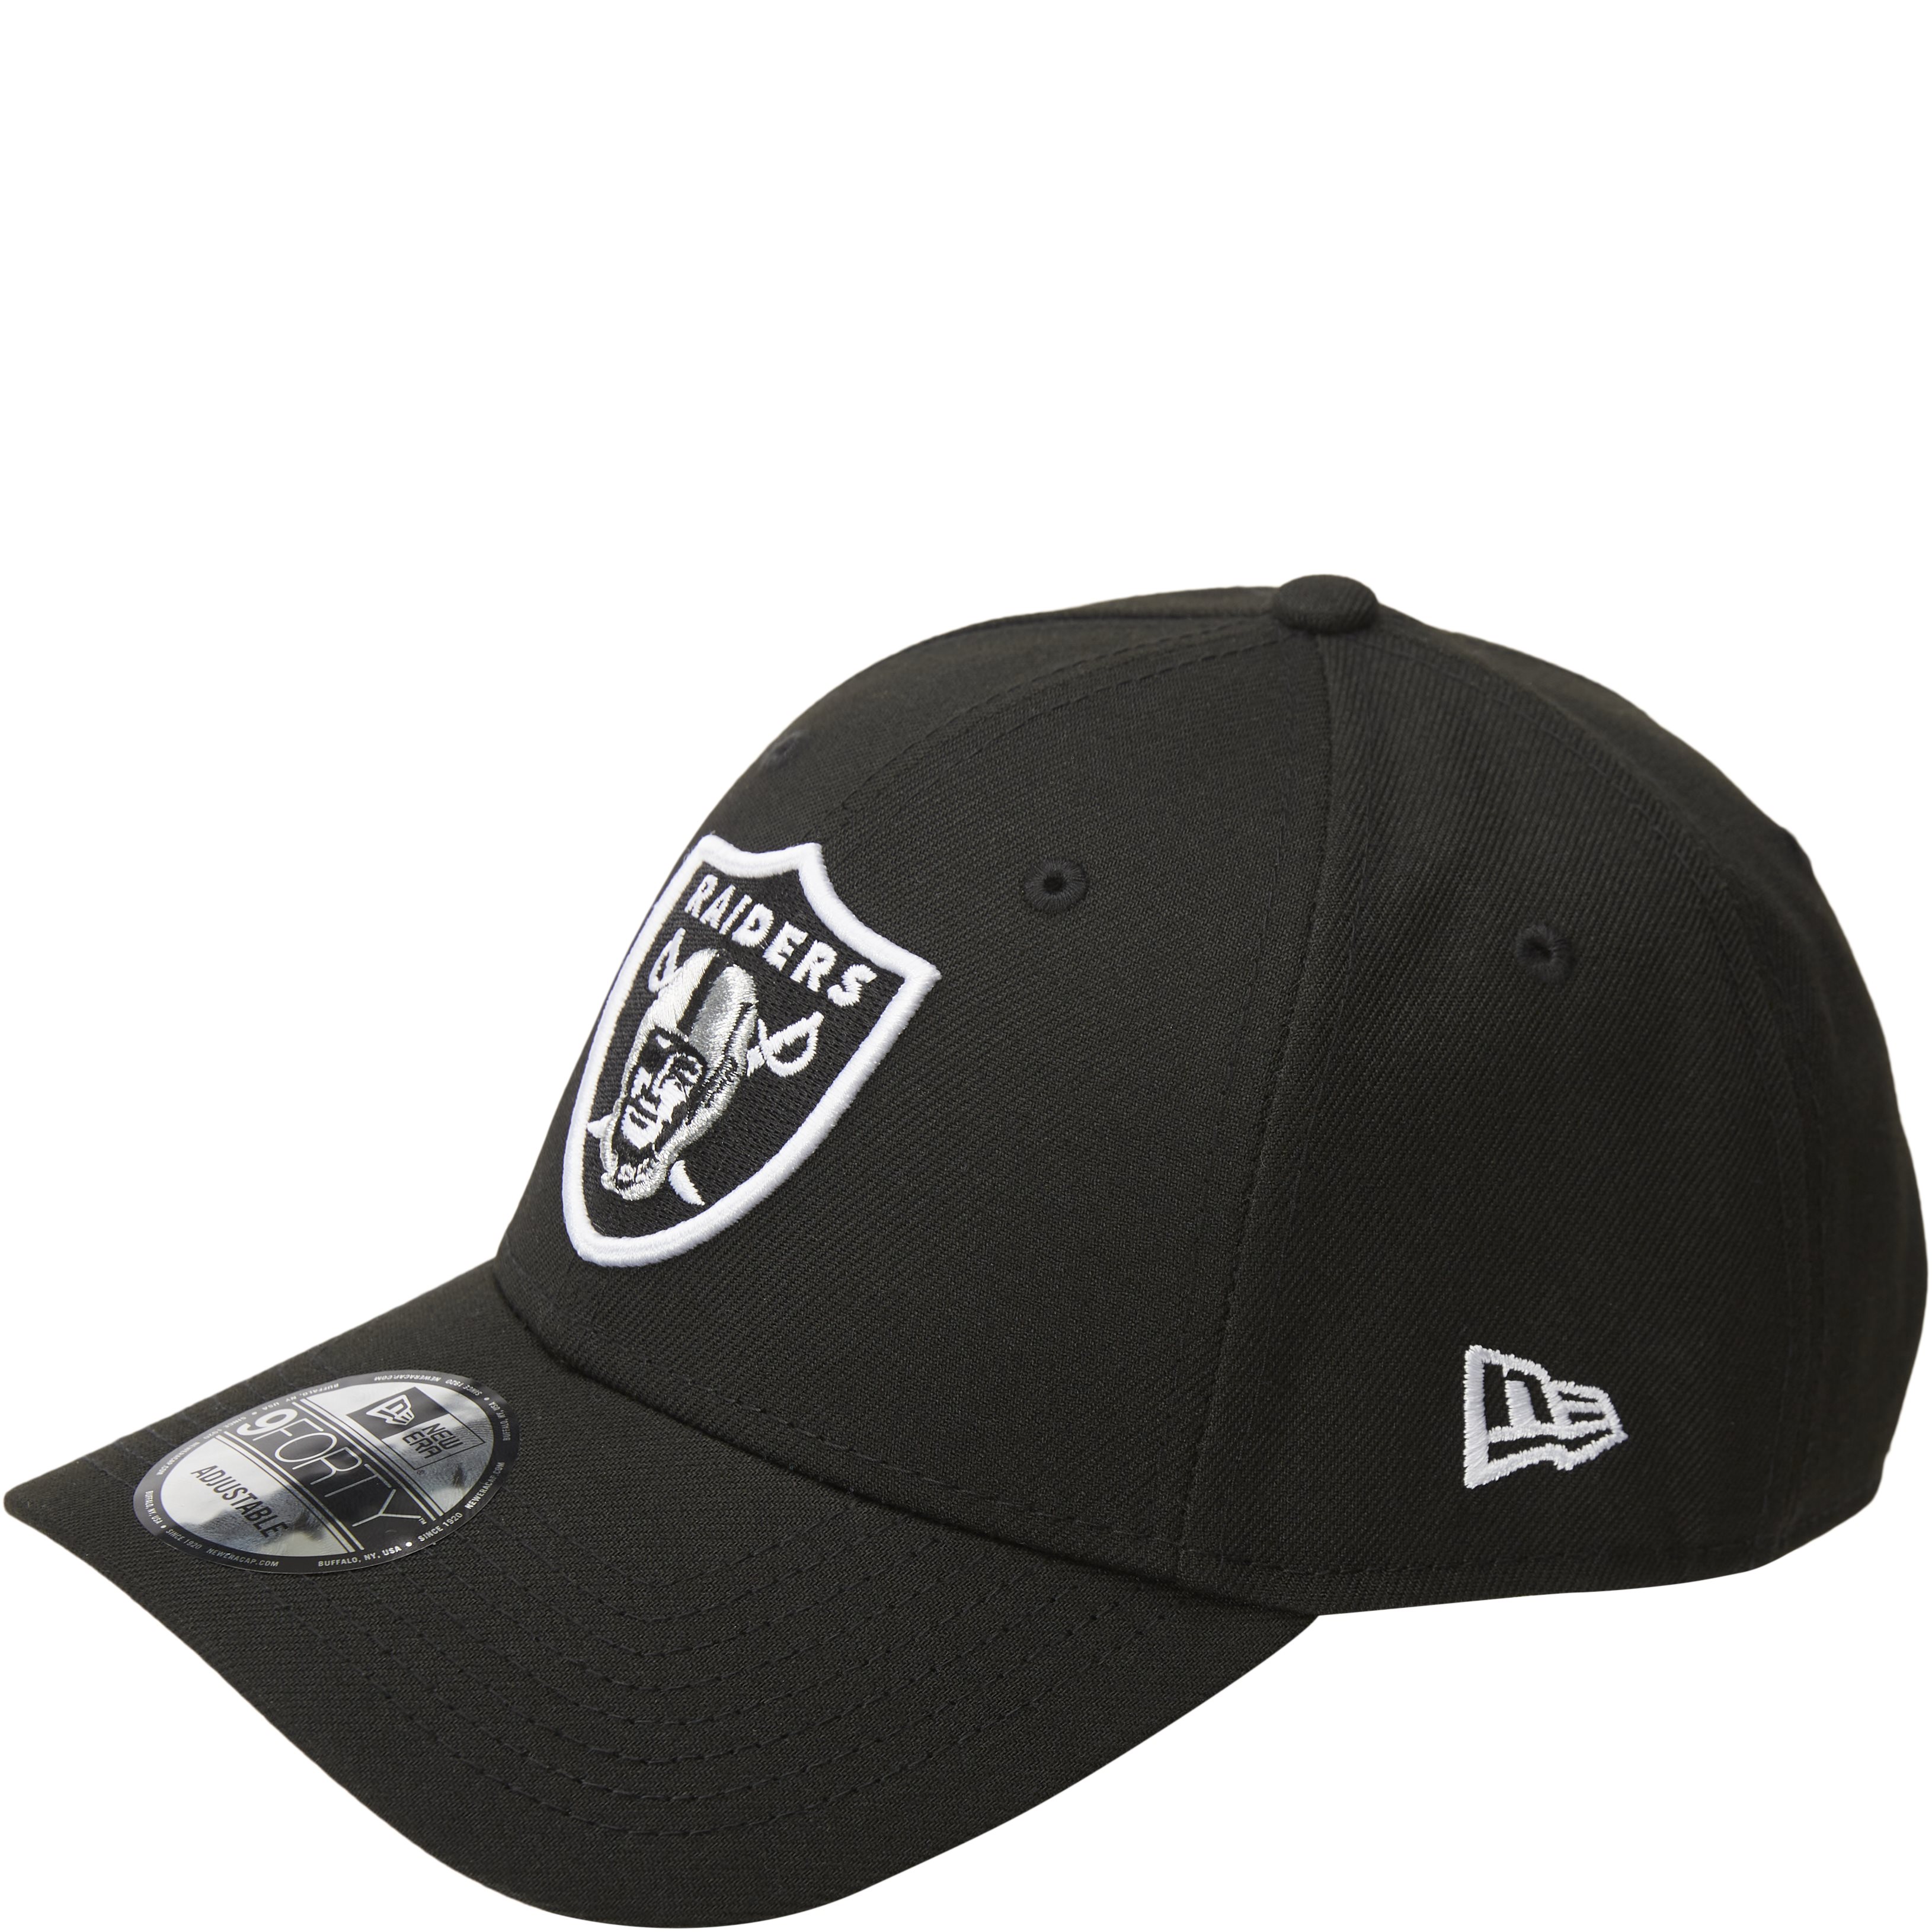 940 Raiders Cap - Caps - Black